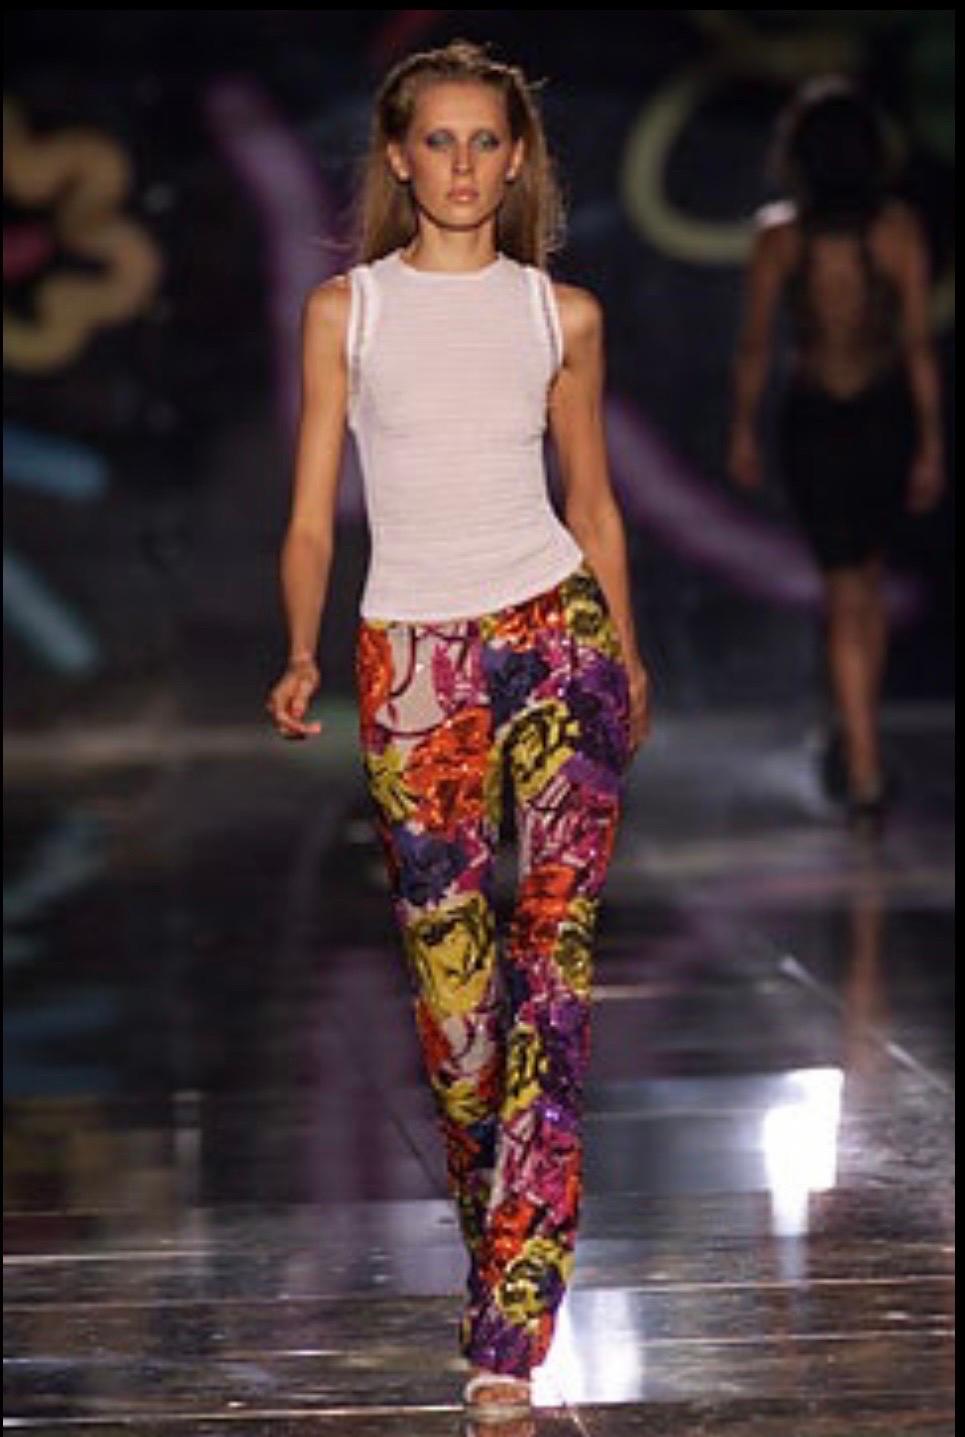 Gianni Versace Couture a créé un pantalon en perles à imprimé floral pour la collection printemps-été 2002, dessinée par Donatella Versace.
Des perles complexes ornent la partie inférieure du pantalon.
Fabriqué en Italie
Fermeture zippée au